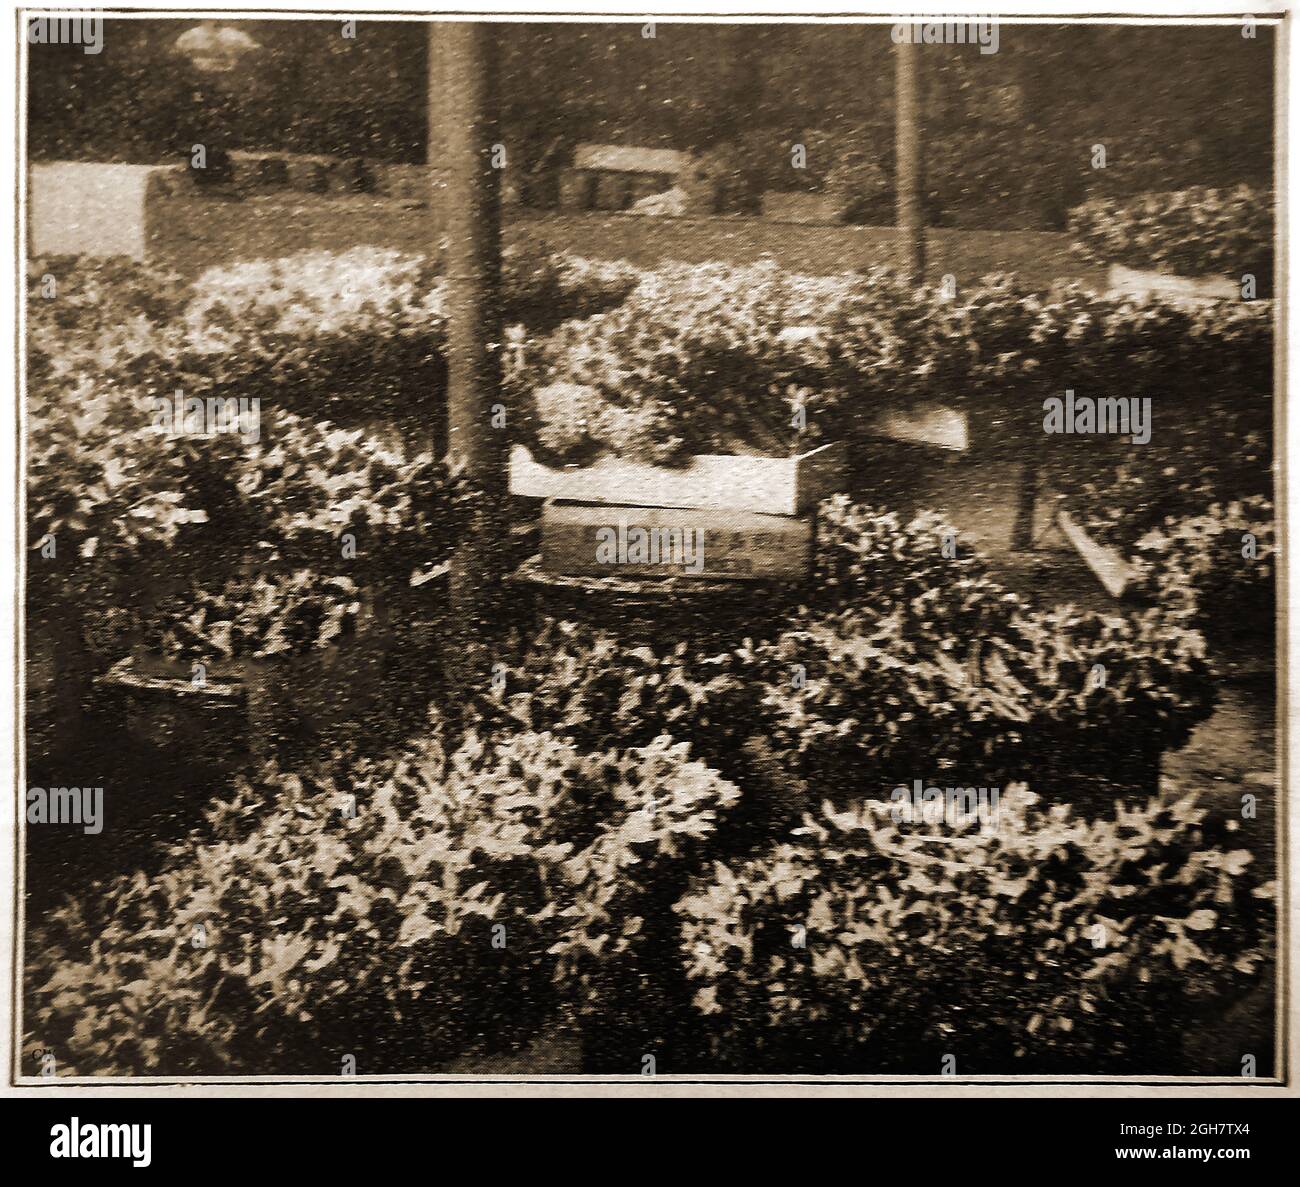 1914 - Kelly & Co, Flowers fournisseurs, Scilly Isles, Royaume-Uni. Une photo de presse de l'époque montrant une sélection de fleurs de jonquille en début de saison dans la zone d'emballage. Scilly a un record dans l'industrie de la fleur pour fournir des fleurs tôt grâce à son climat doux. C'est dans i879 qu'un islander envoya une boîte de narcissi sauvage au marché de Convent Garden. Les acheteurs ont été tellement impressionnés par les premières fleurs qu'une industrie de fleurs a commencé immédiatement . Aujourd'hui, c'est la 2e plus grande industrie des îles (après le tourisme) Banque D'Images